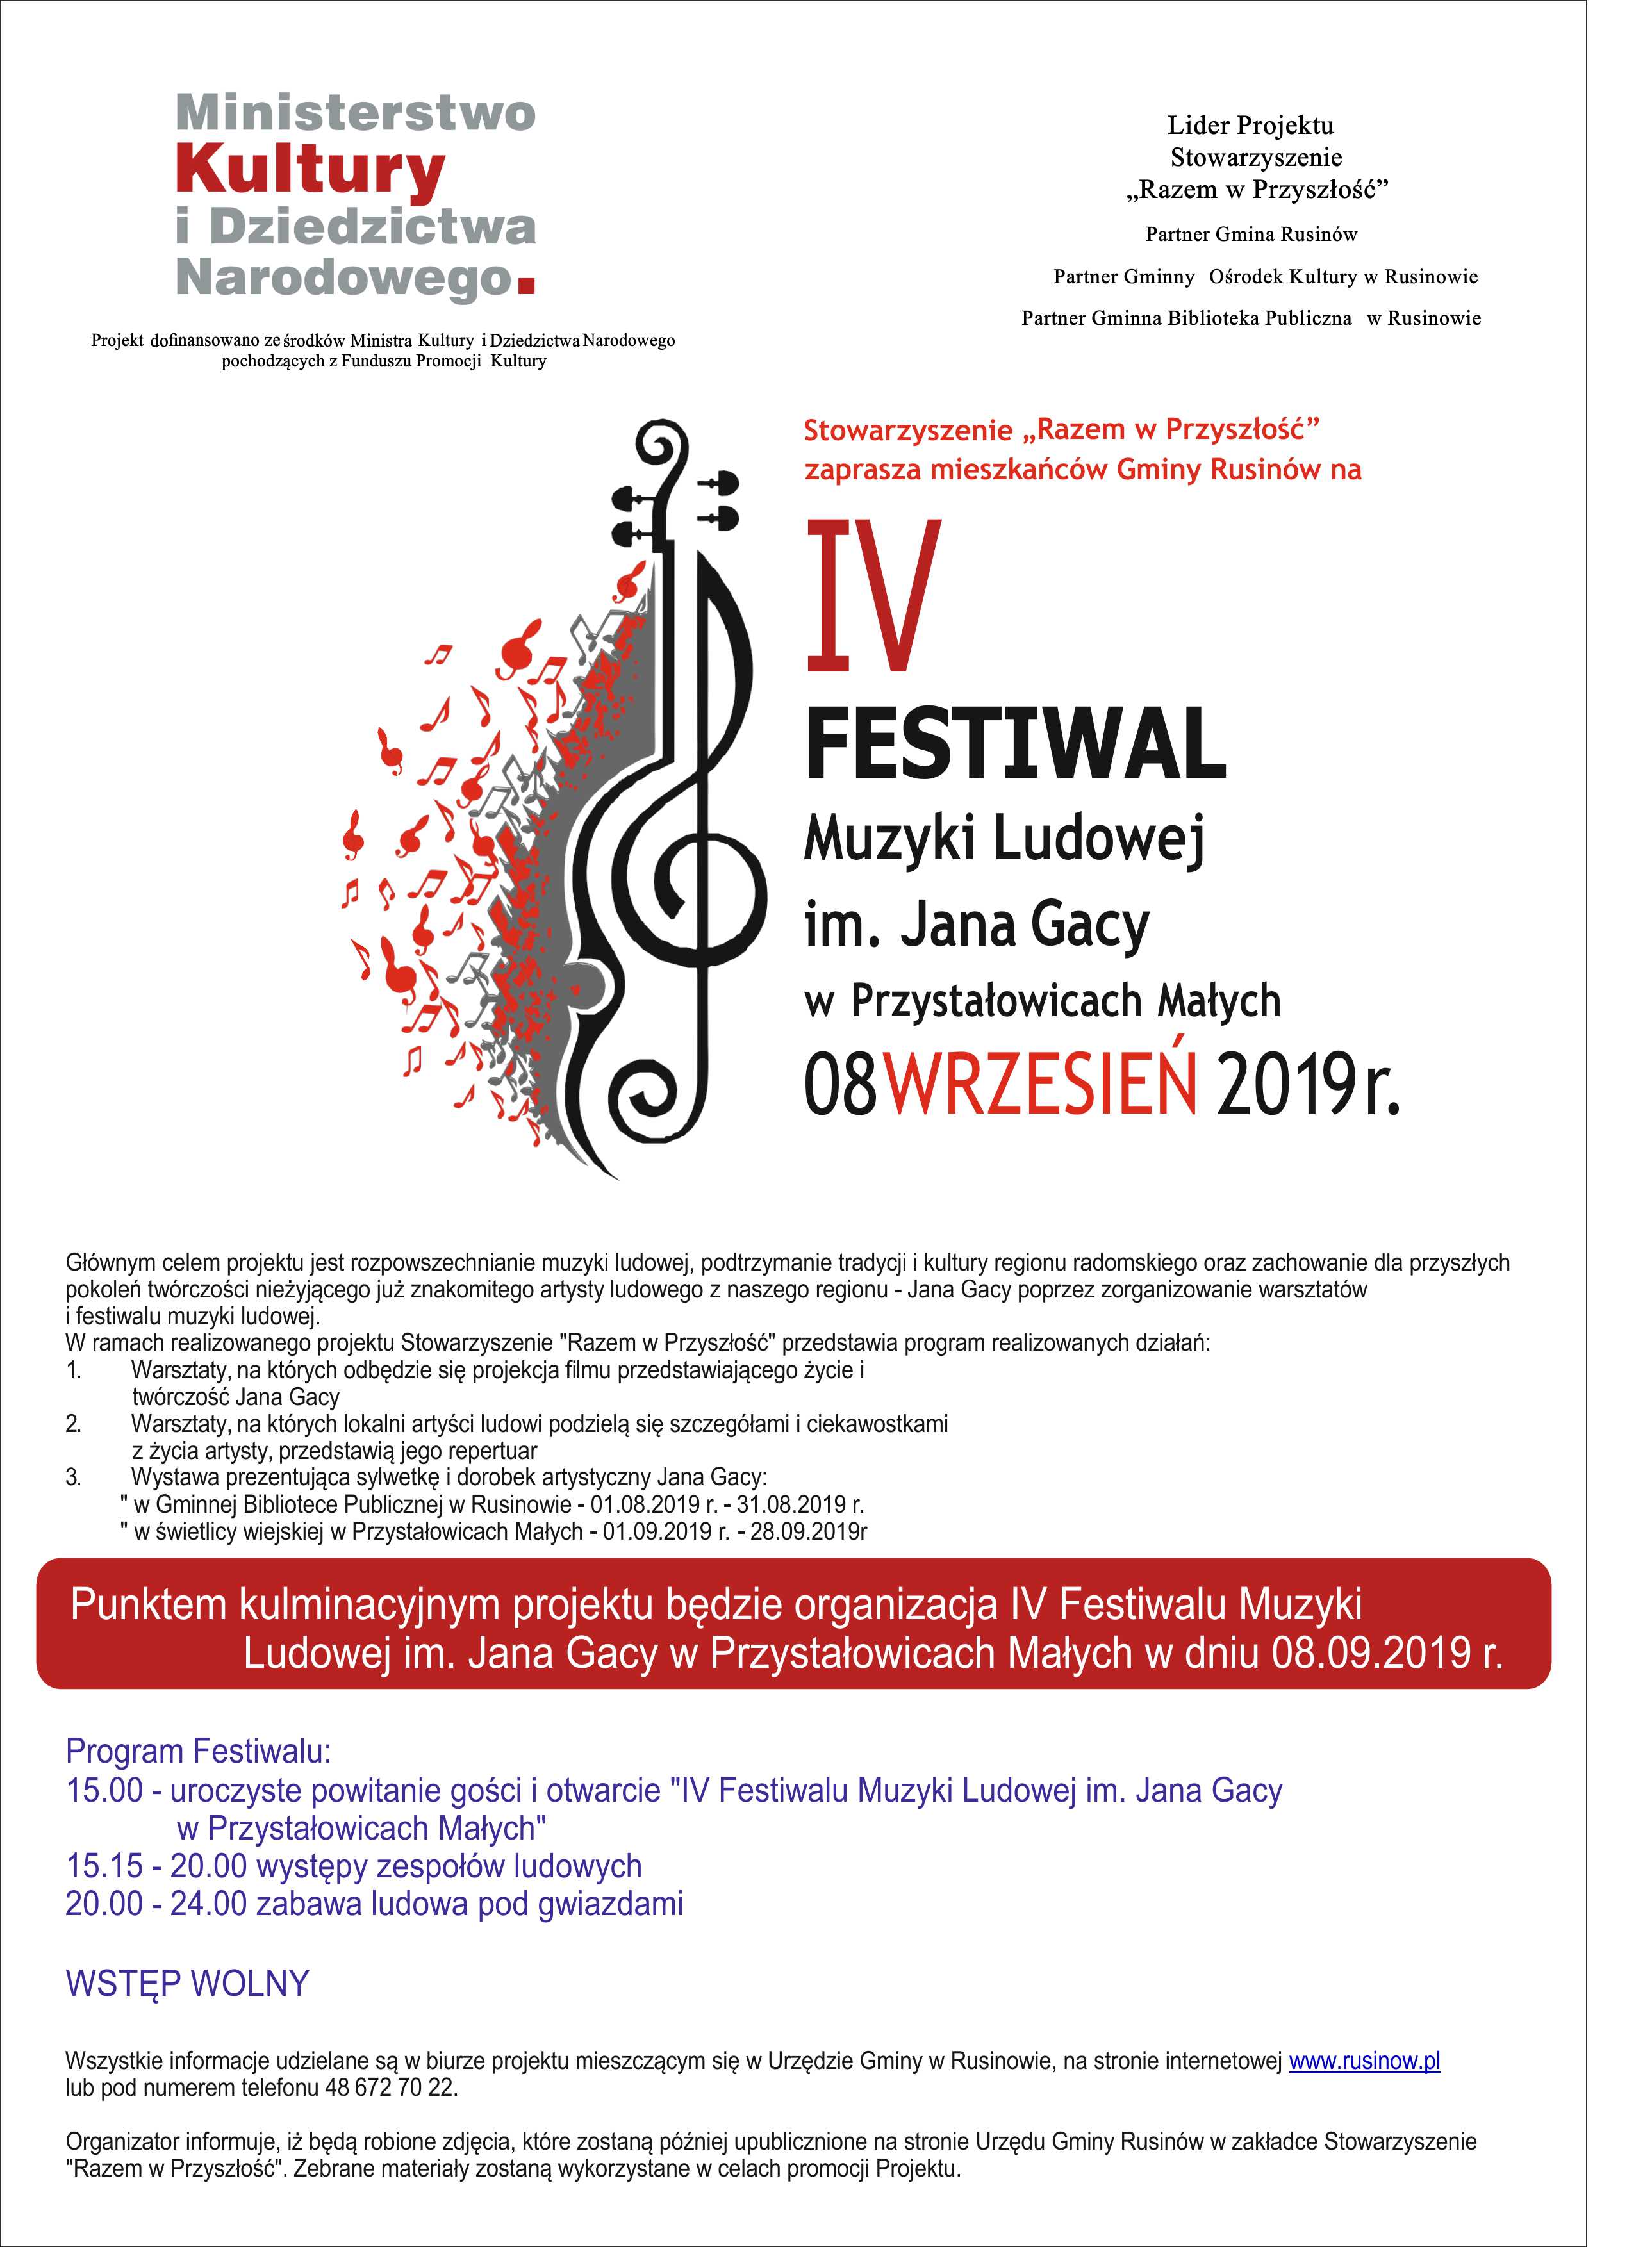 Zaproszenie na IV Festiwal Muzyki Ludowej im. Jana Gacy w Przystałowicach Małych